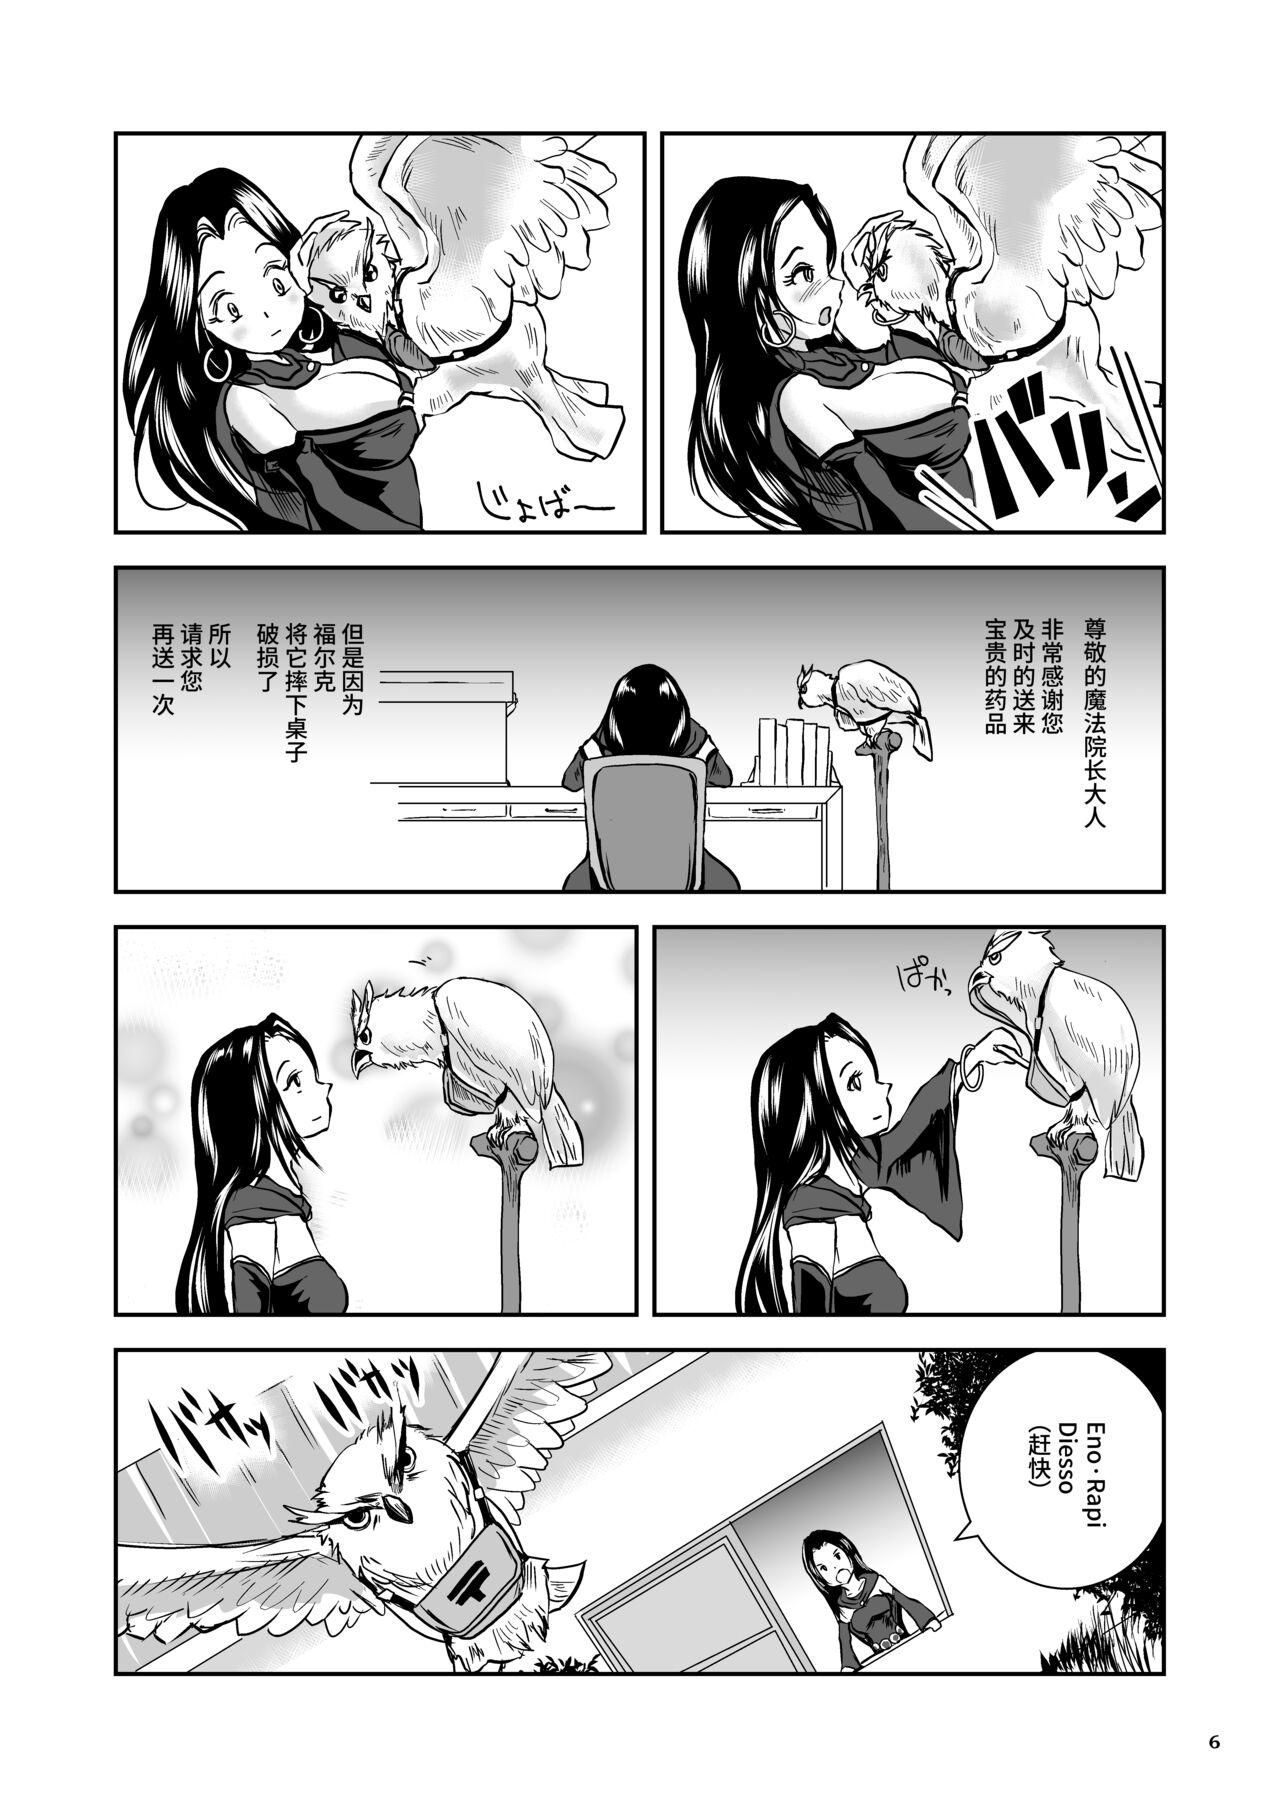 Oonamekuji to Kurokami no Mahoutsukai - Parasitized Giant Slugs V.S. Sorceress of the Black Hair as Aura 5